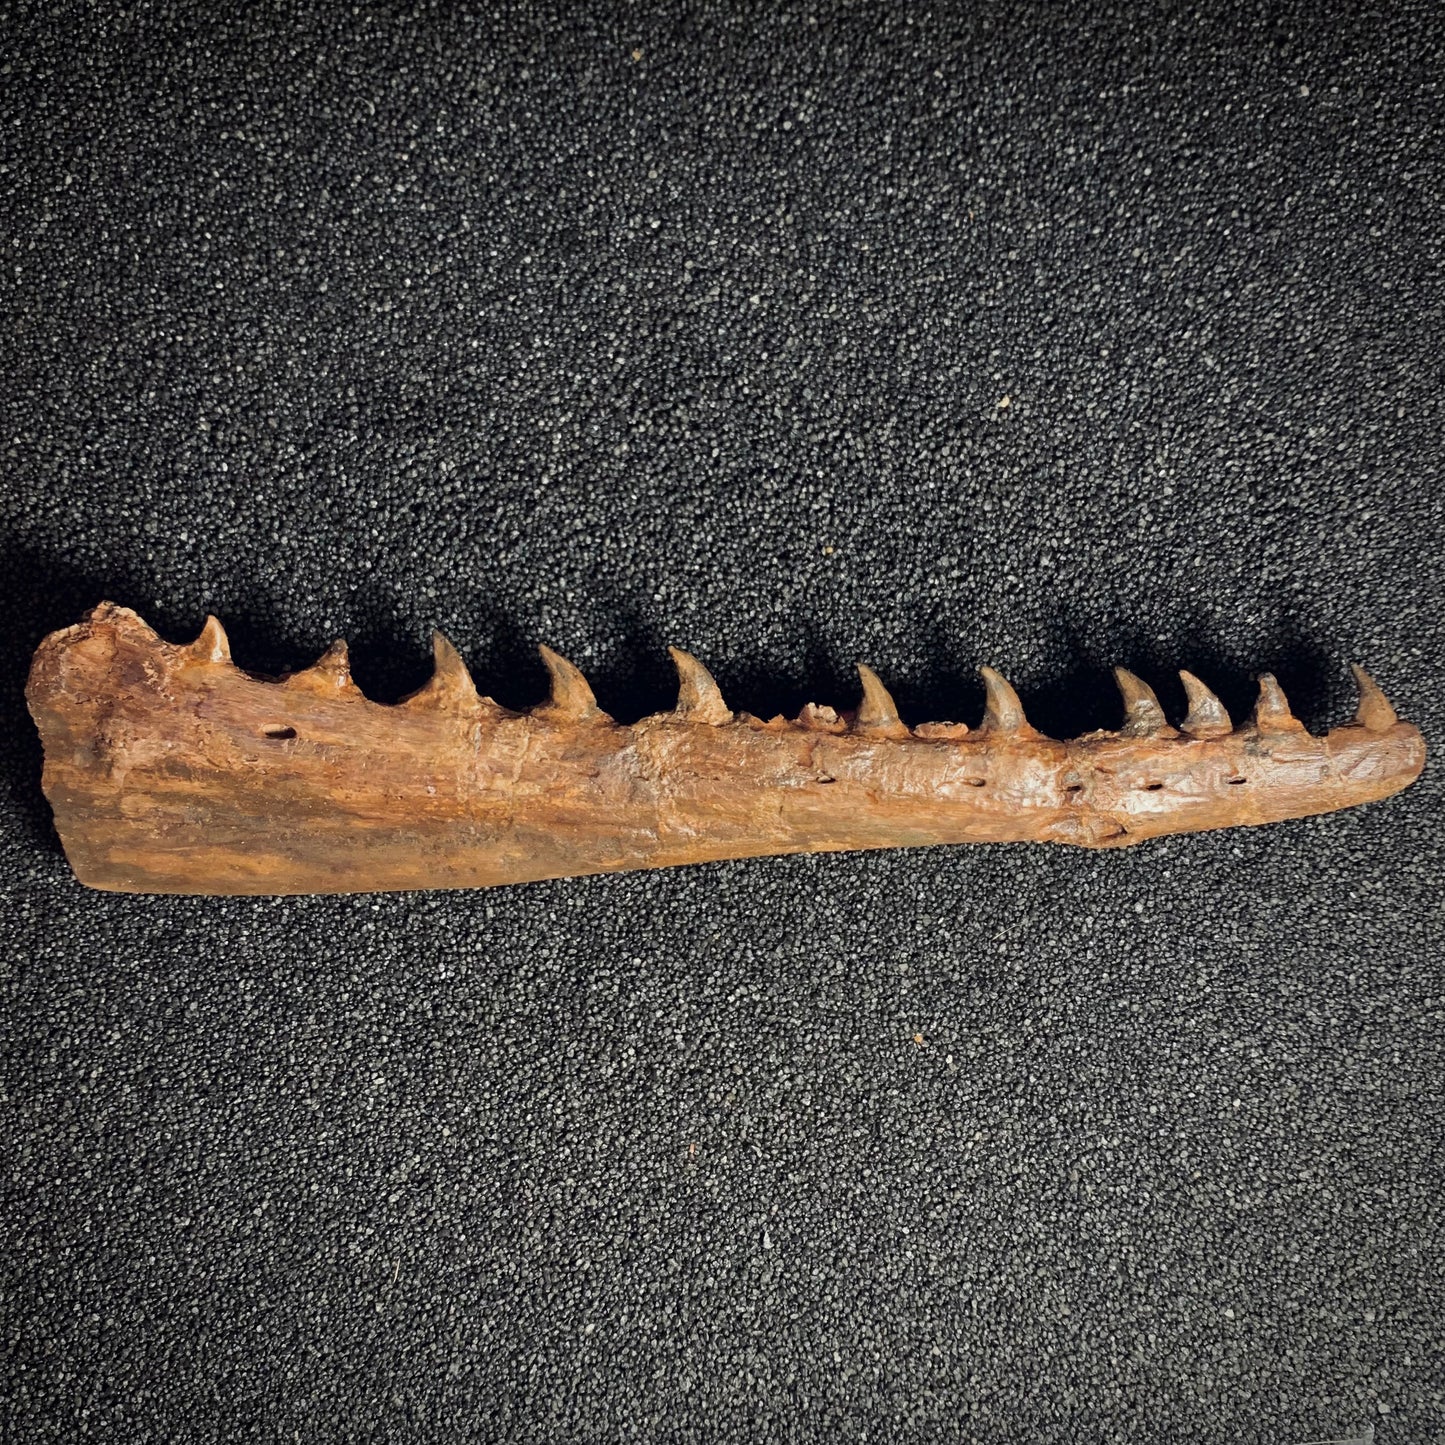 F398 | Mosasauro | Tethysaurus nopcsai